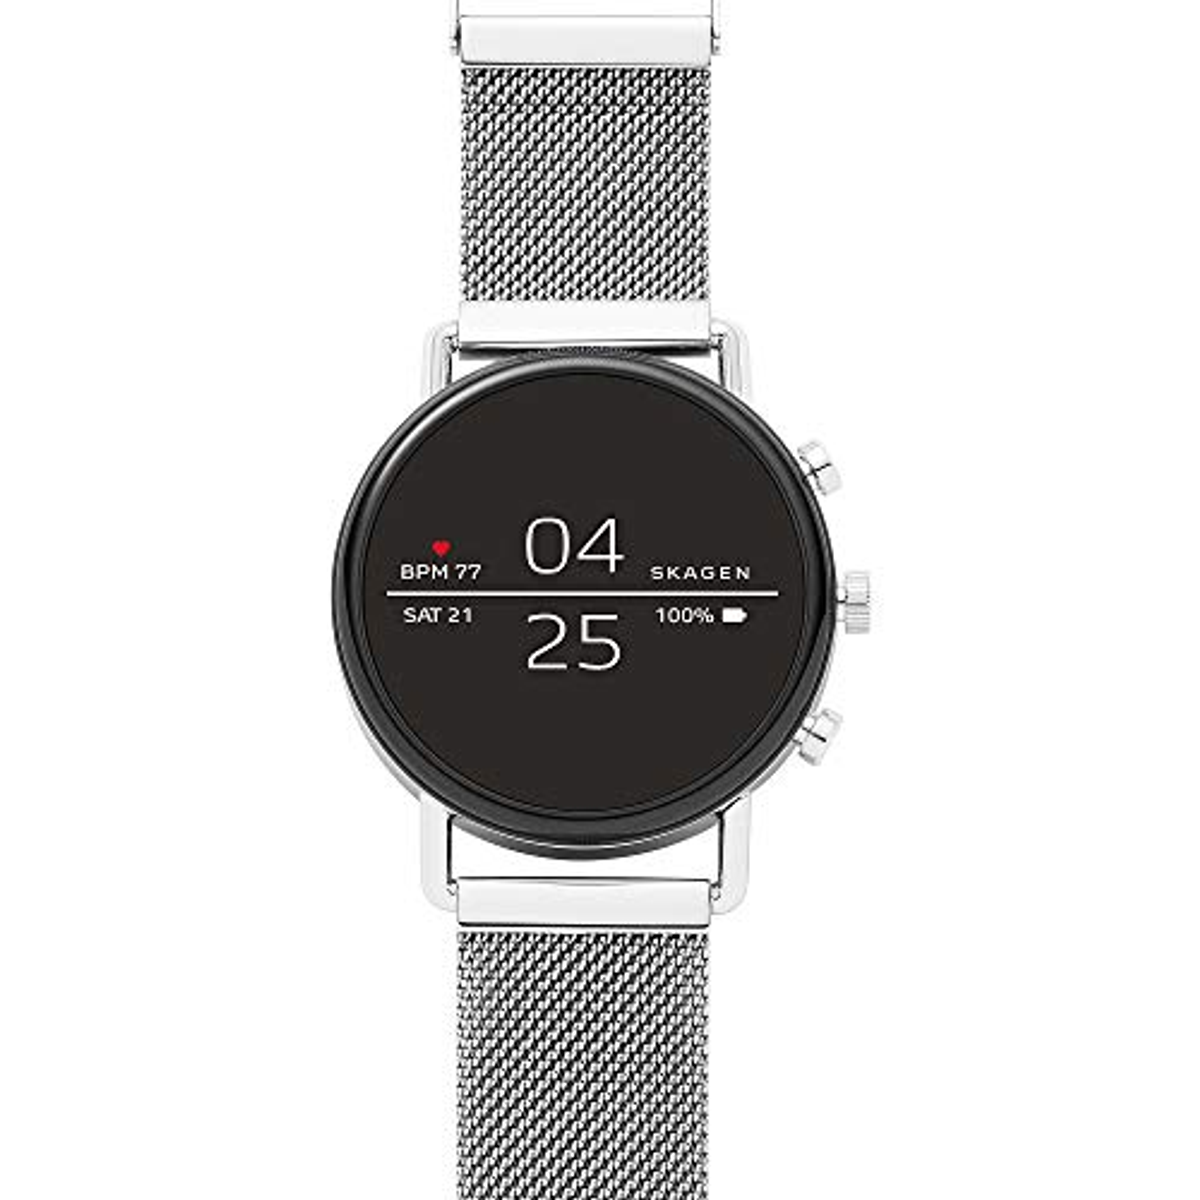 SKAGEN Smartwatch mm, 185 Silver/Black Skagen SKT5102 silicone, Edelstahl Smartwatch